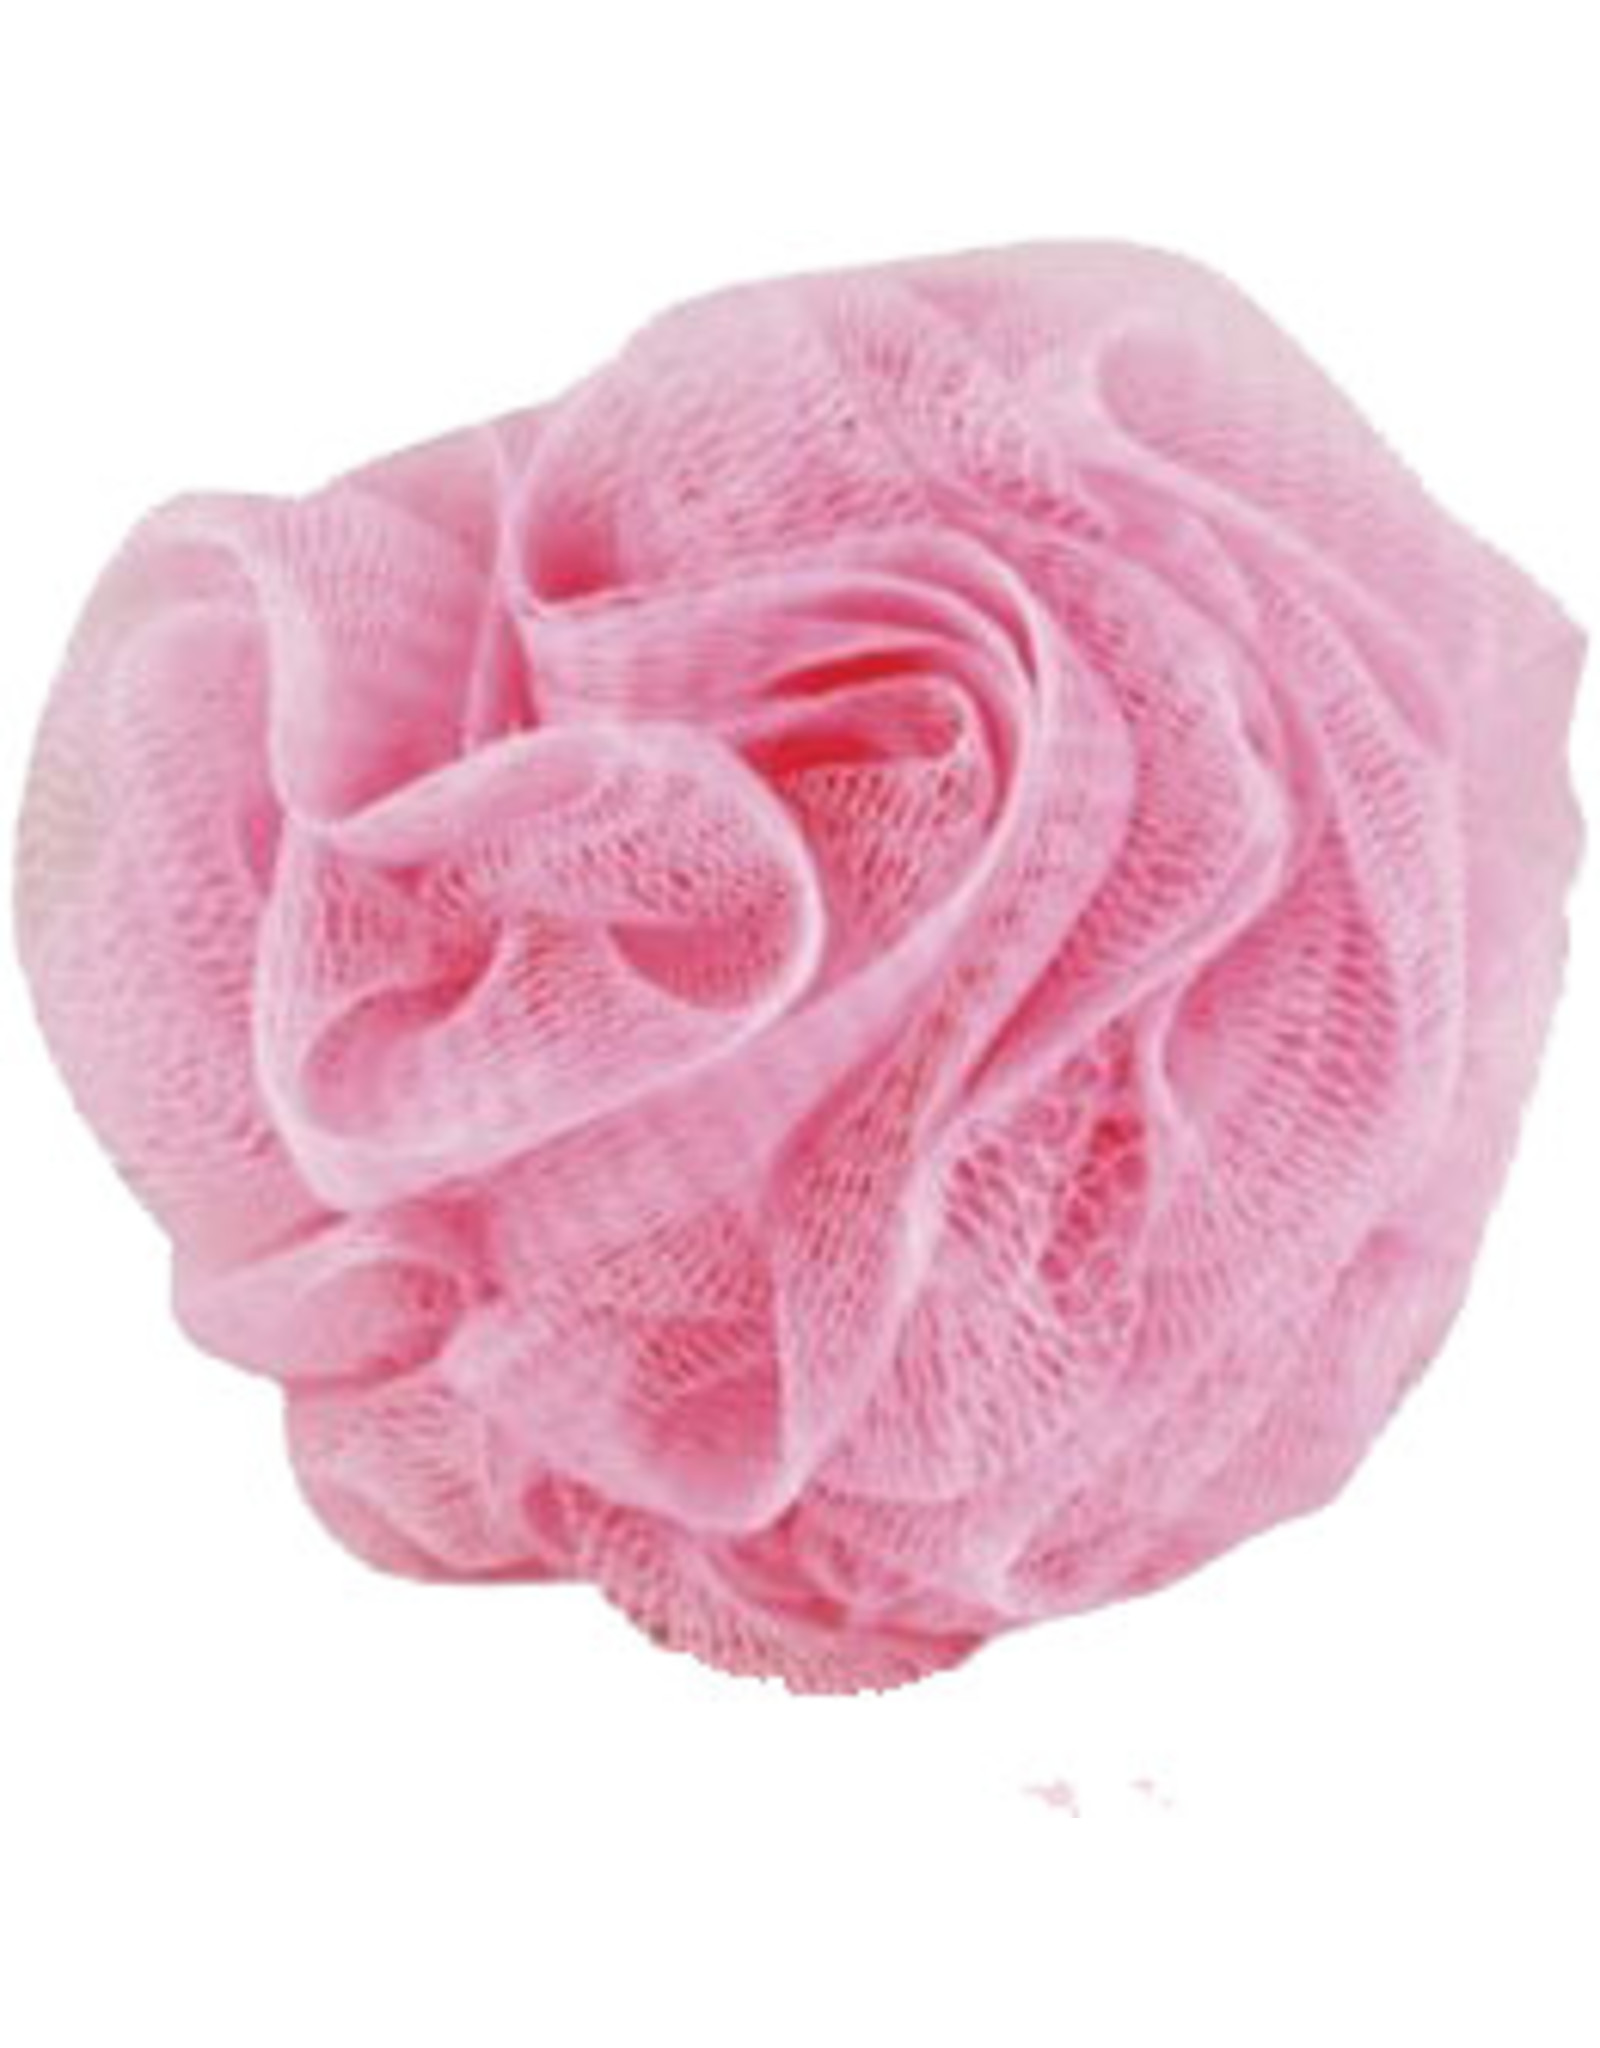 Massagespons 'roze' - Body & Soap